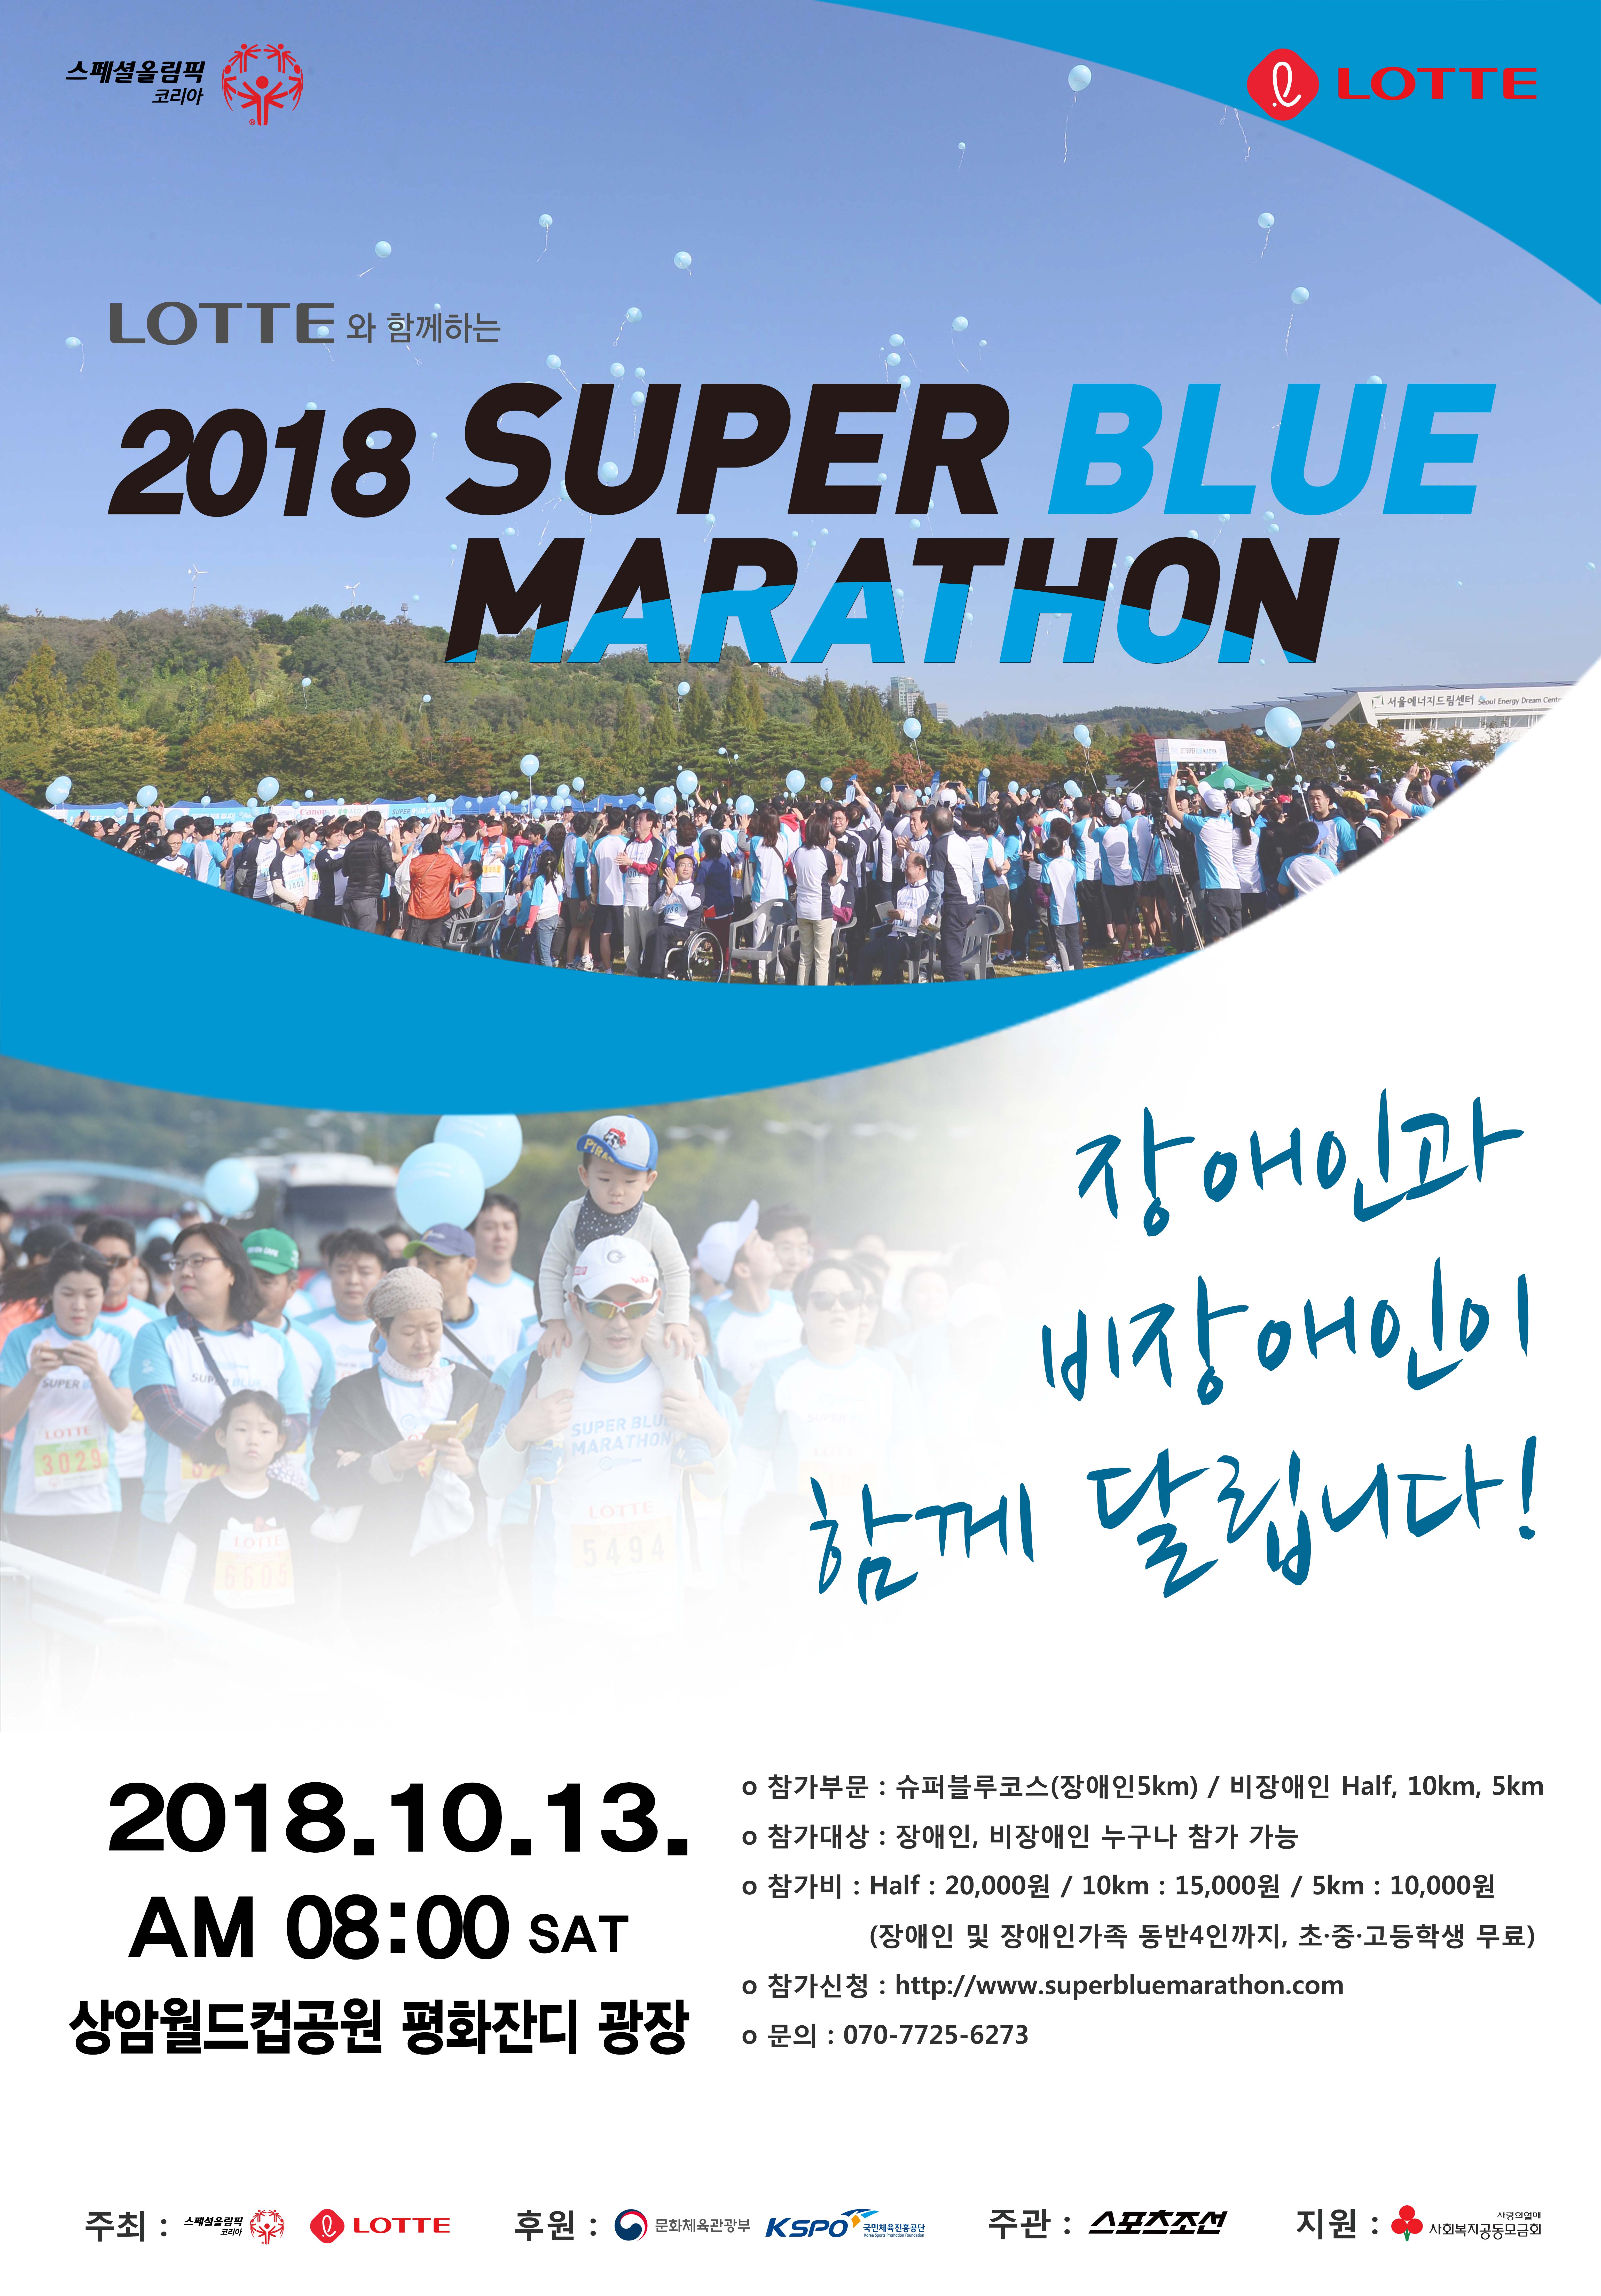 스페셜올림픽코리아 2018 슈퍼블루마라톤 개최에 따른 참가 신청 안내 포스터